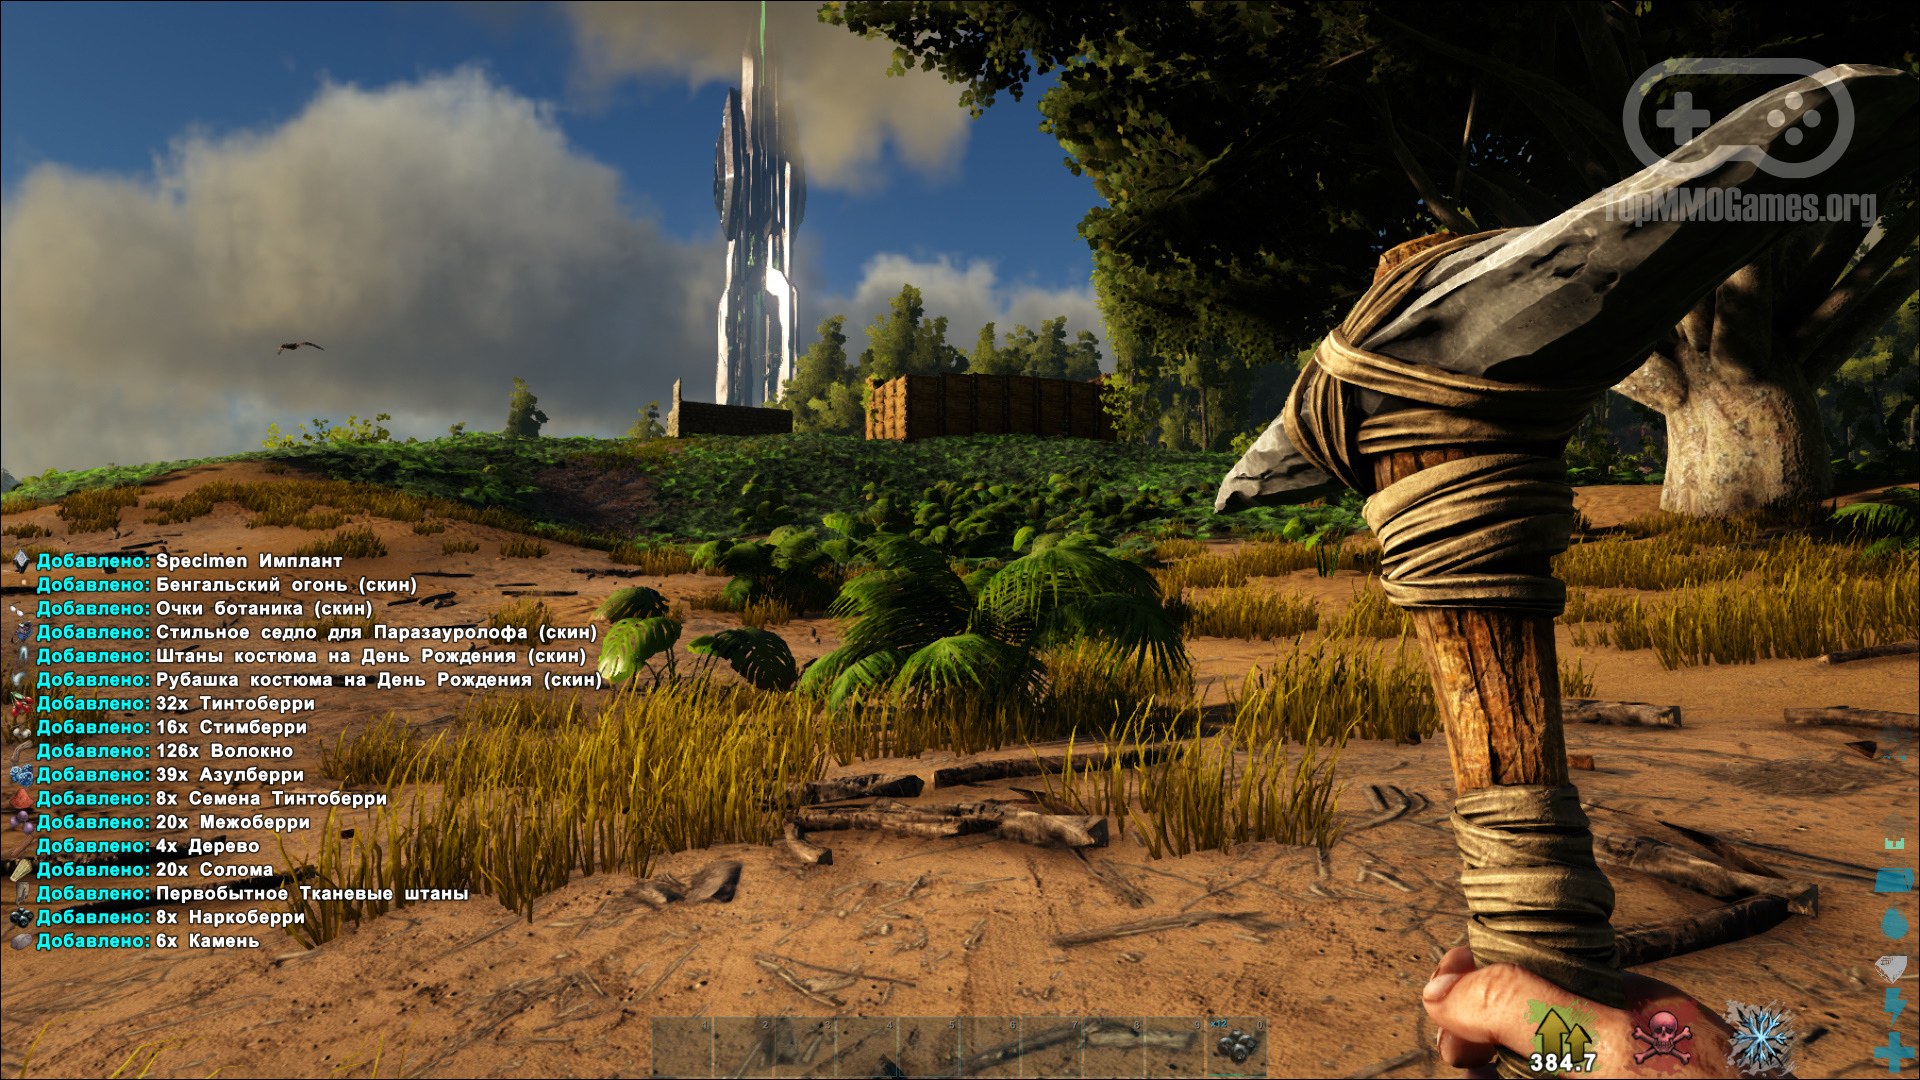 Скриншоты ARK: Survival Evolved, 70 картинок из онлайн игры АРК: Сурвайвал ...